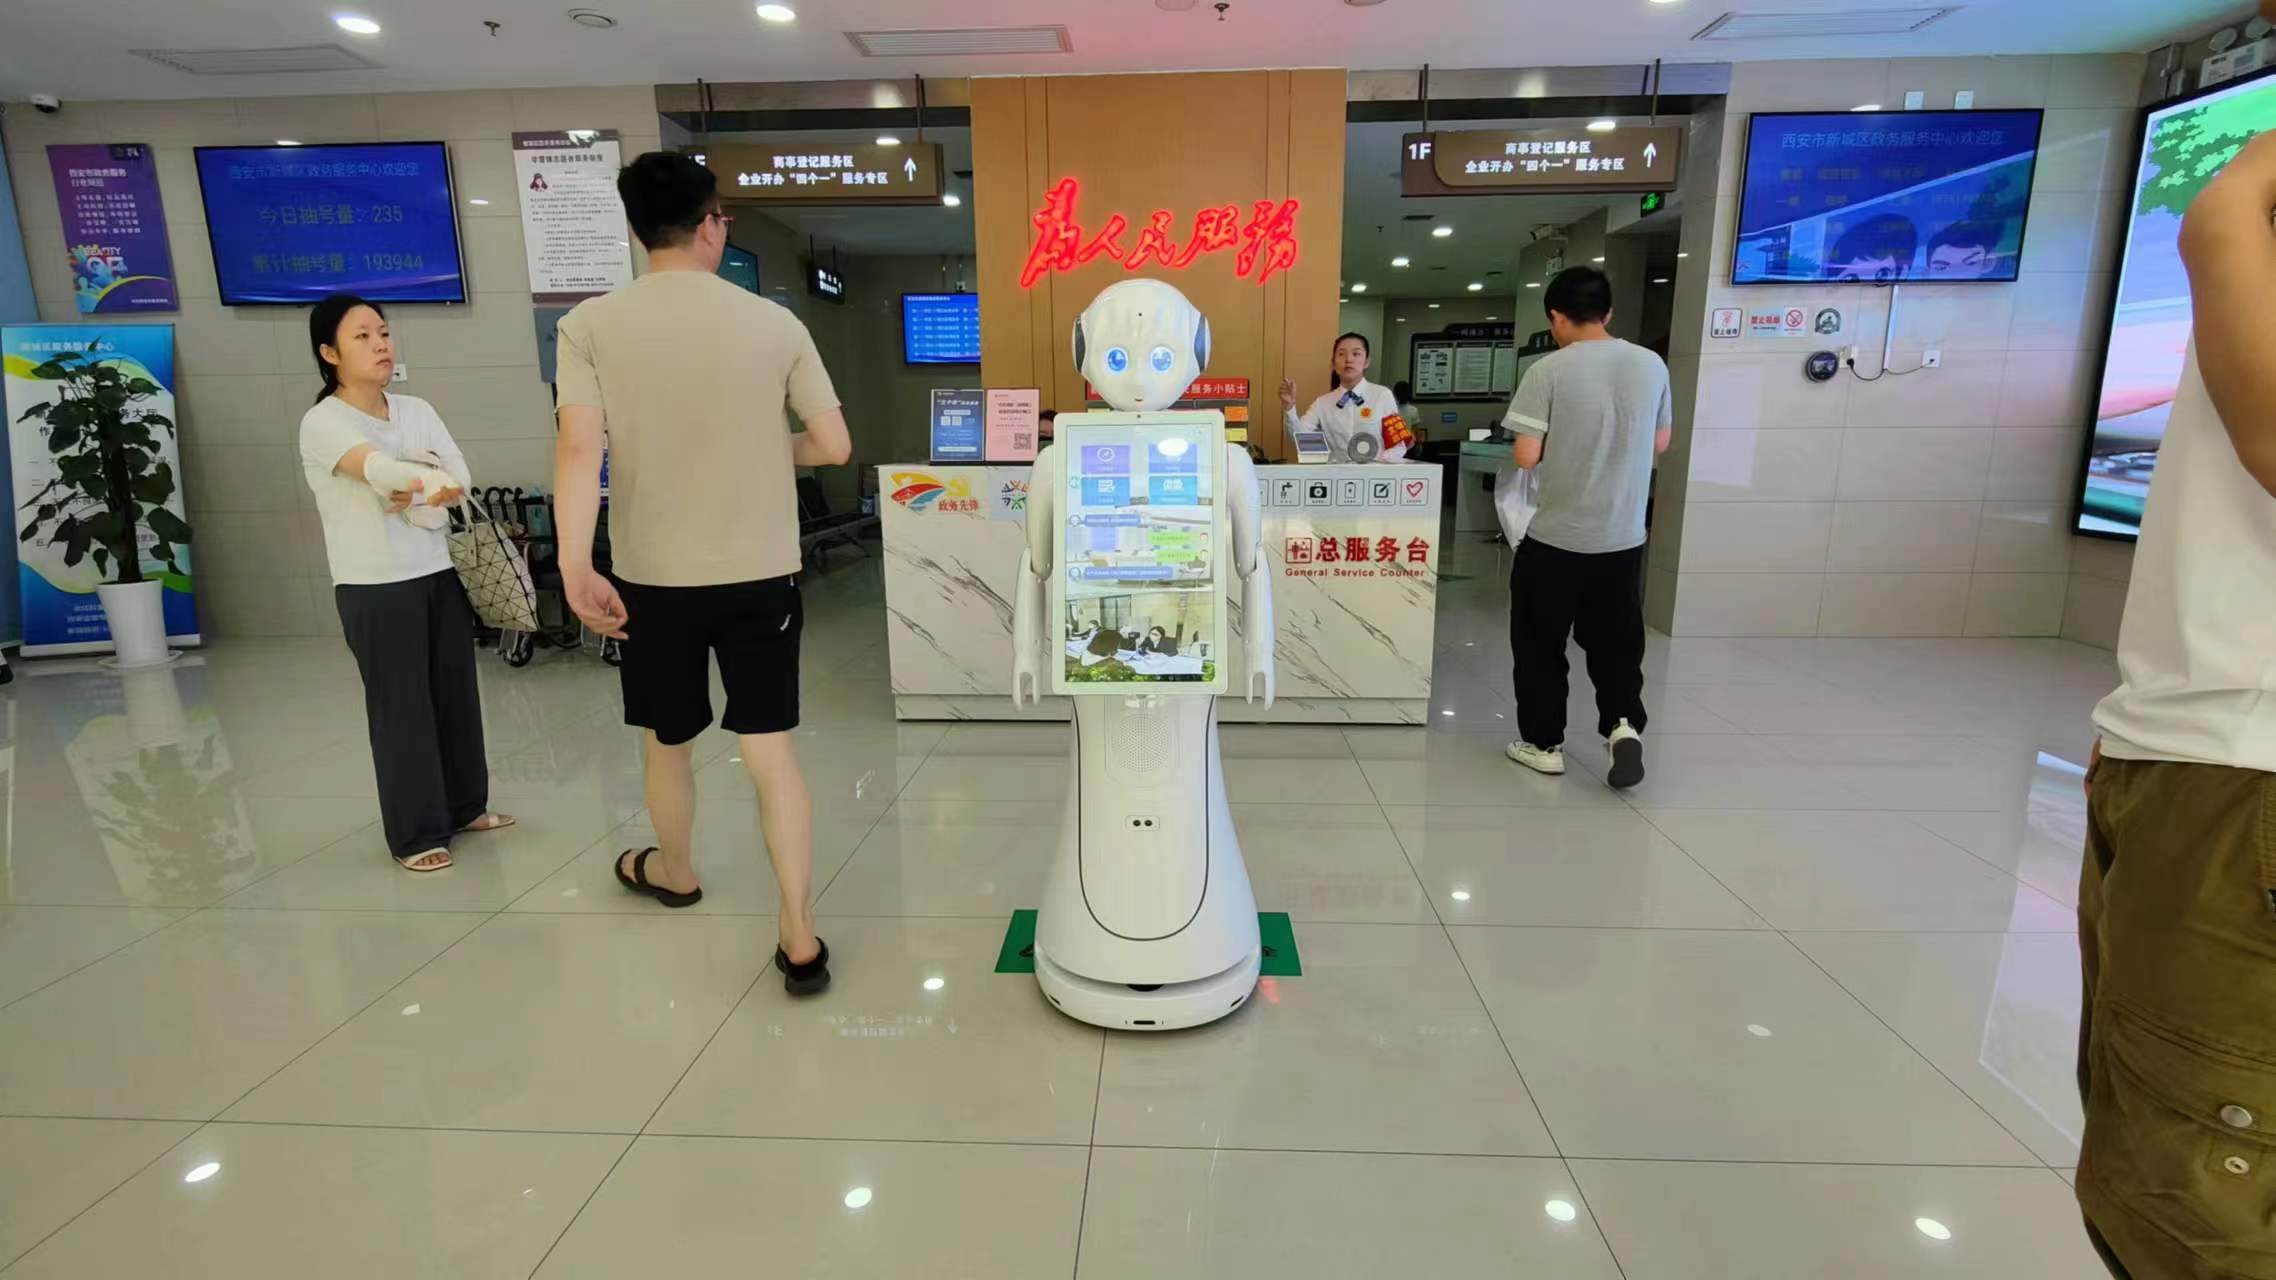 O caso de aplicação do robô de serviço Alice-AI no “Centro de Assuntos Governamentais do Novo Distrito de Xi'an”!